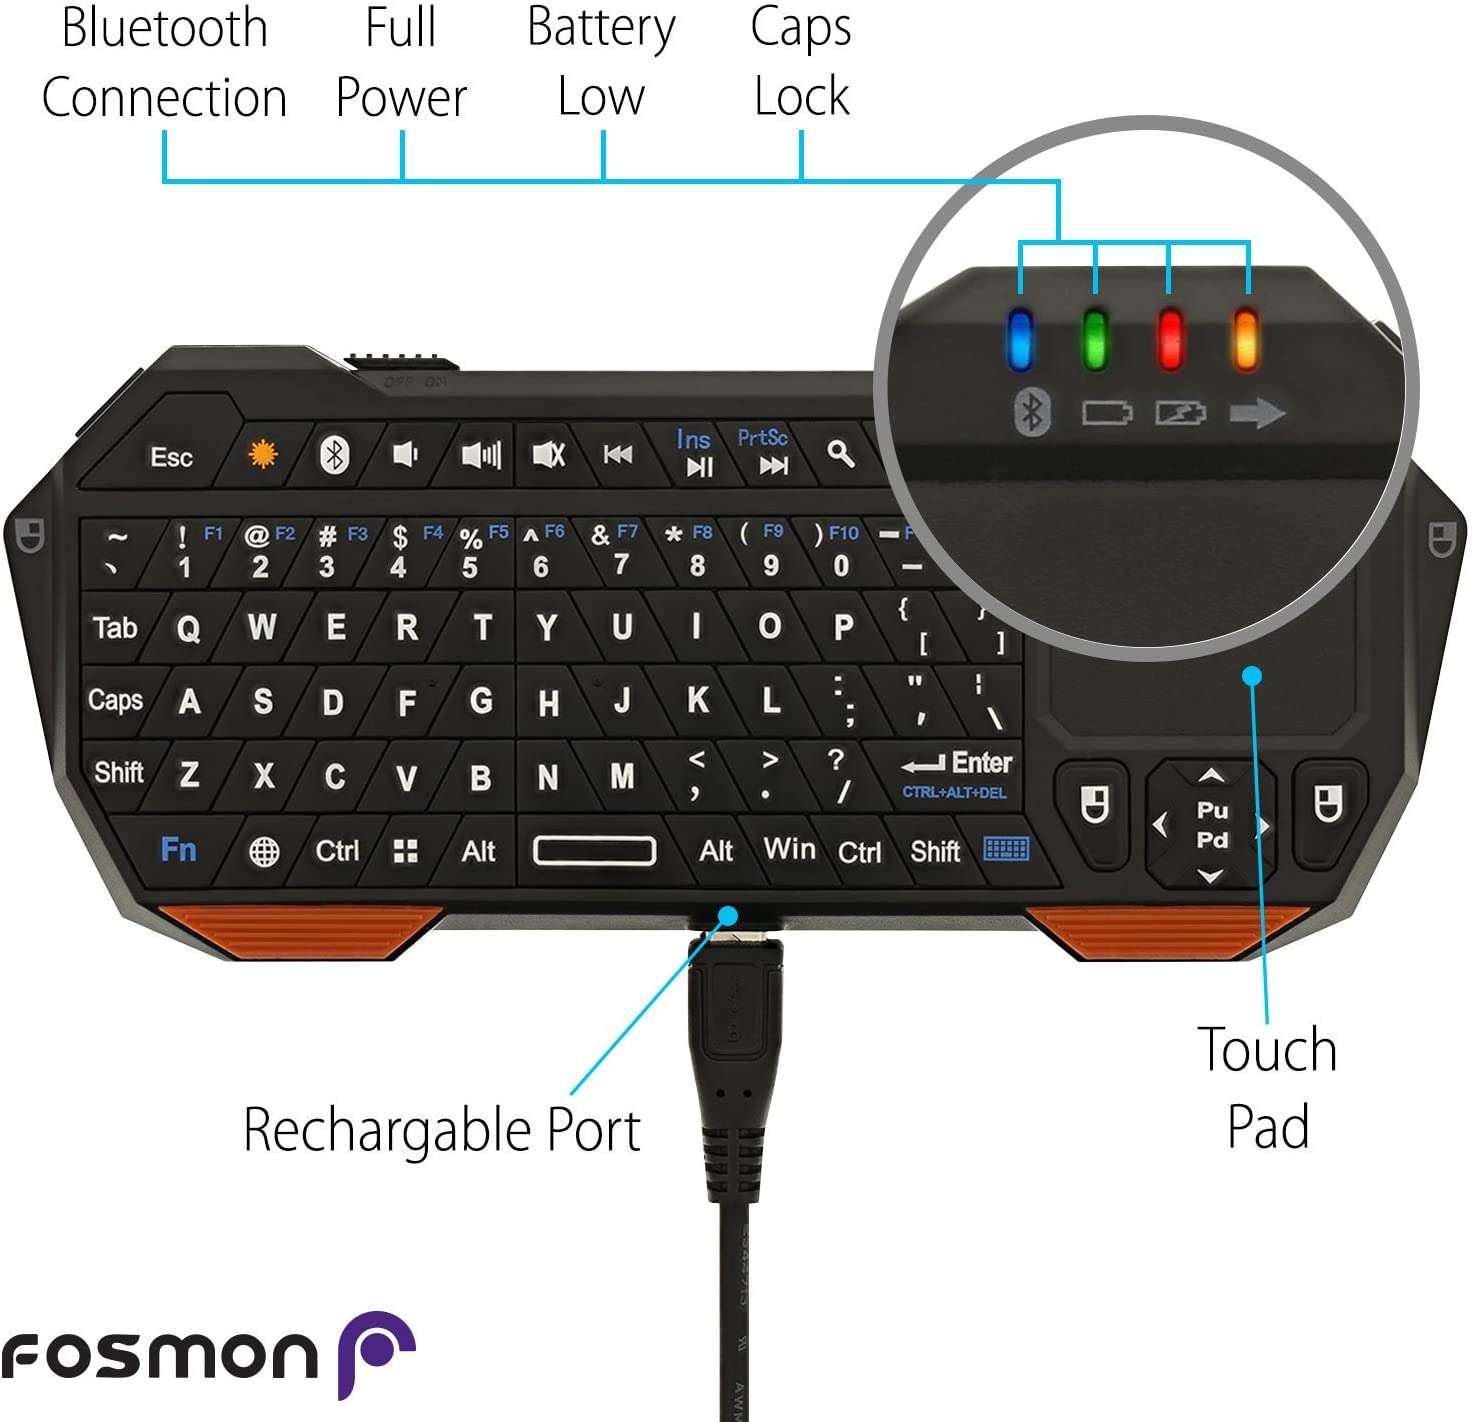 Fosmon Mini Bluetooth Keyboard